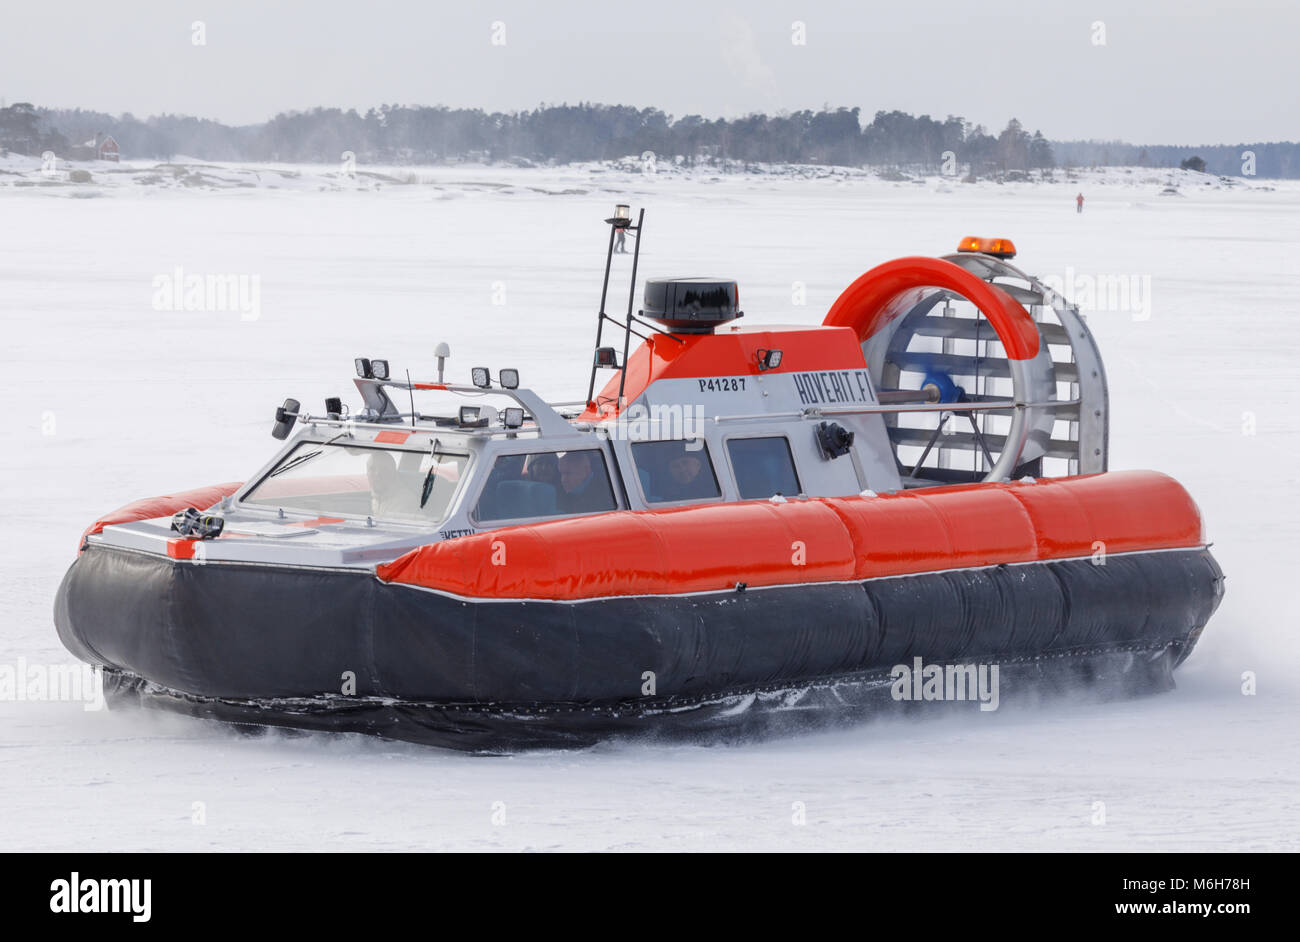 Tiger 12 hovercraft Demonstration ihrer Mobilität auf Eis und Schnee aus Helsinki Anfang März. Das Schiff ist für abenteuerliche Tourist Transport zur Verfügung. Stockfoto